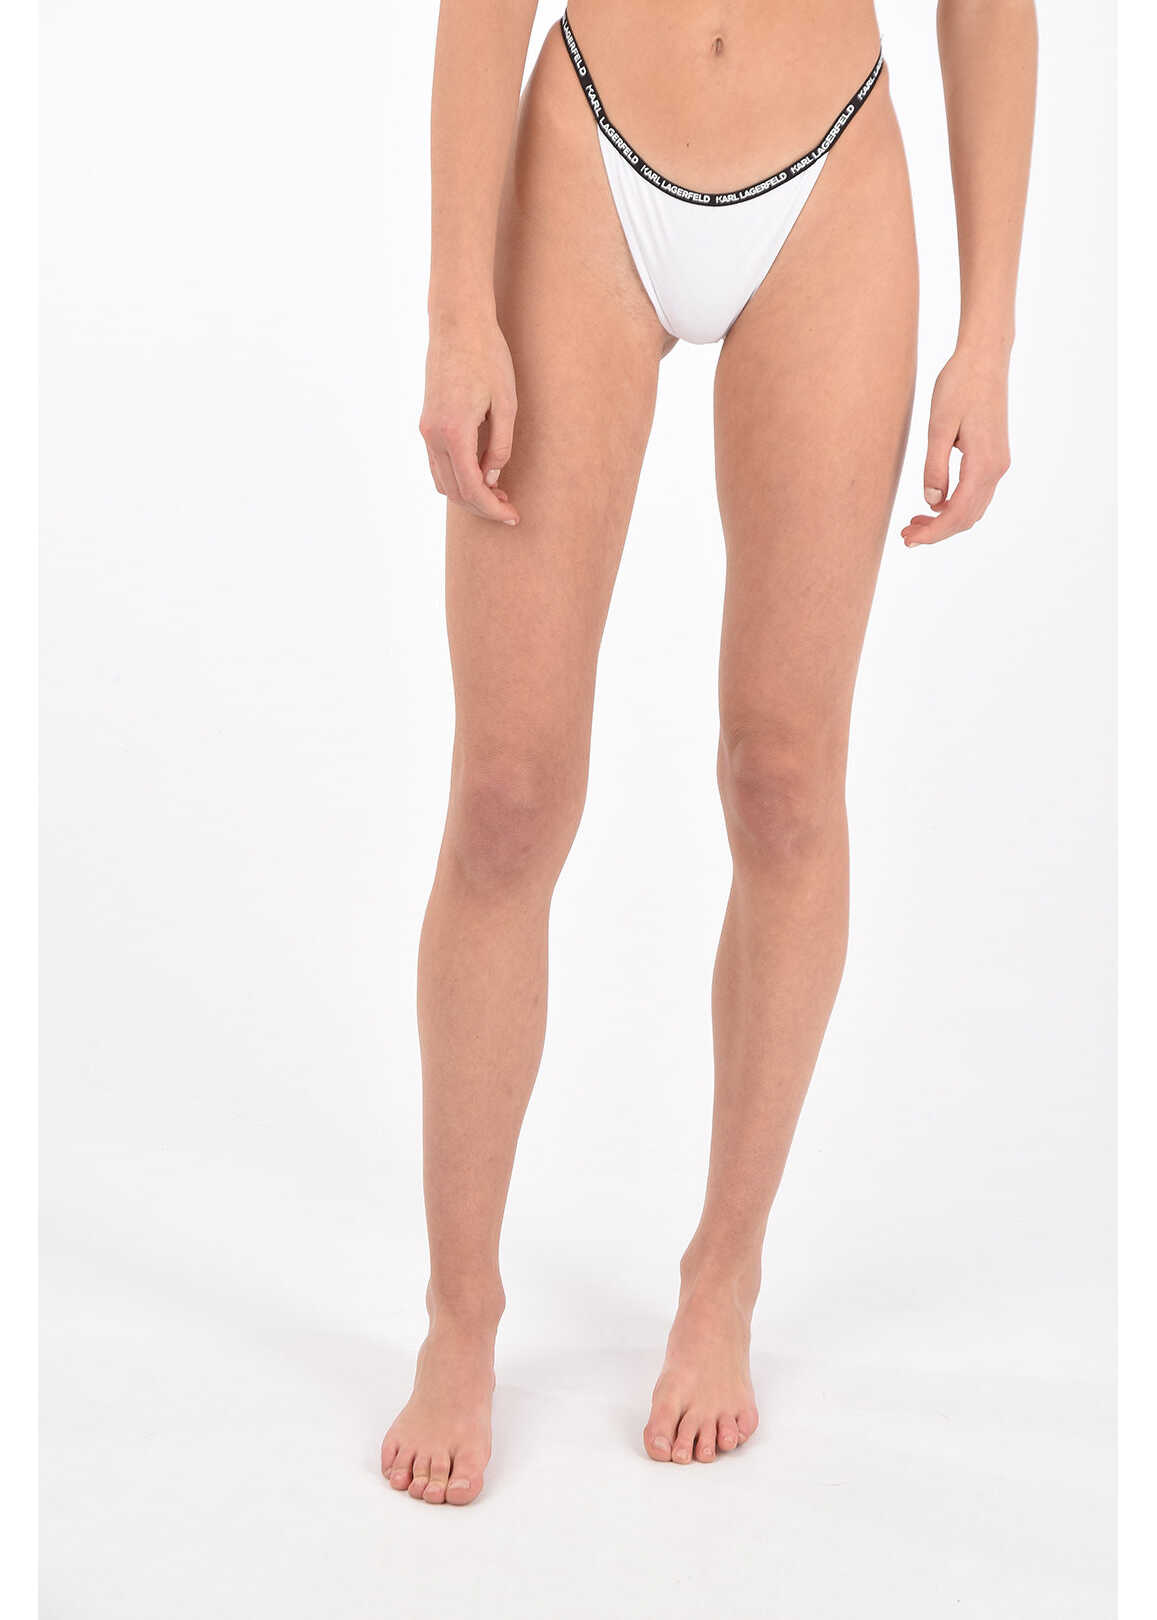 Karl Lagerfeld High Cut Bikini Bottom With Logo Band Black & White